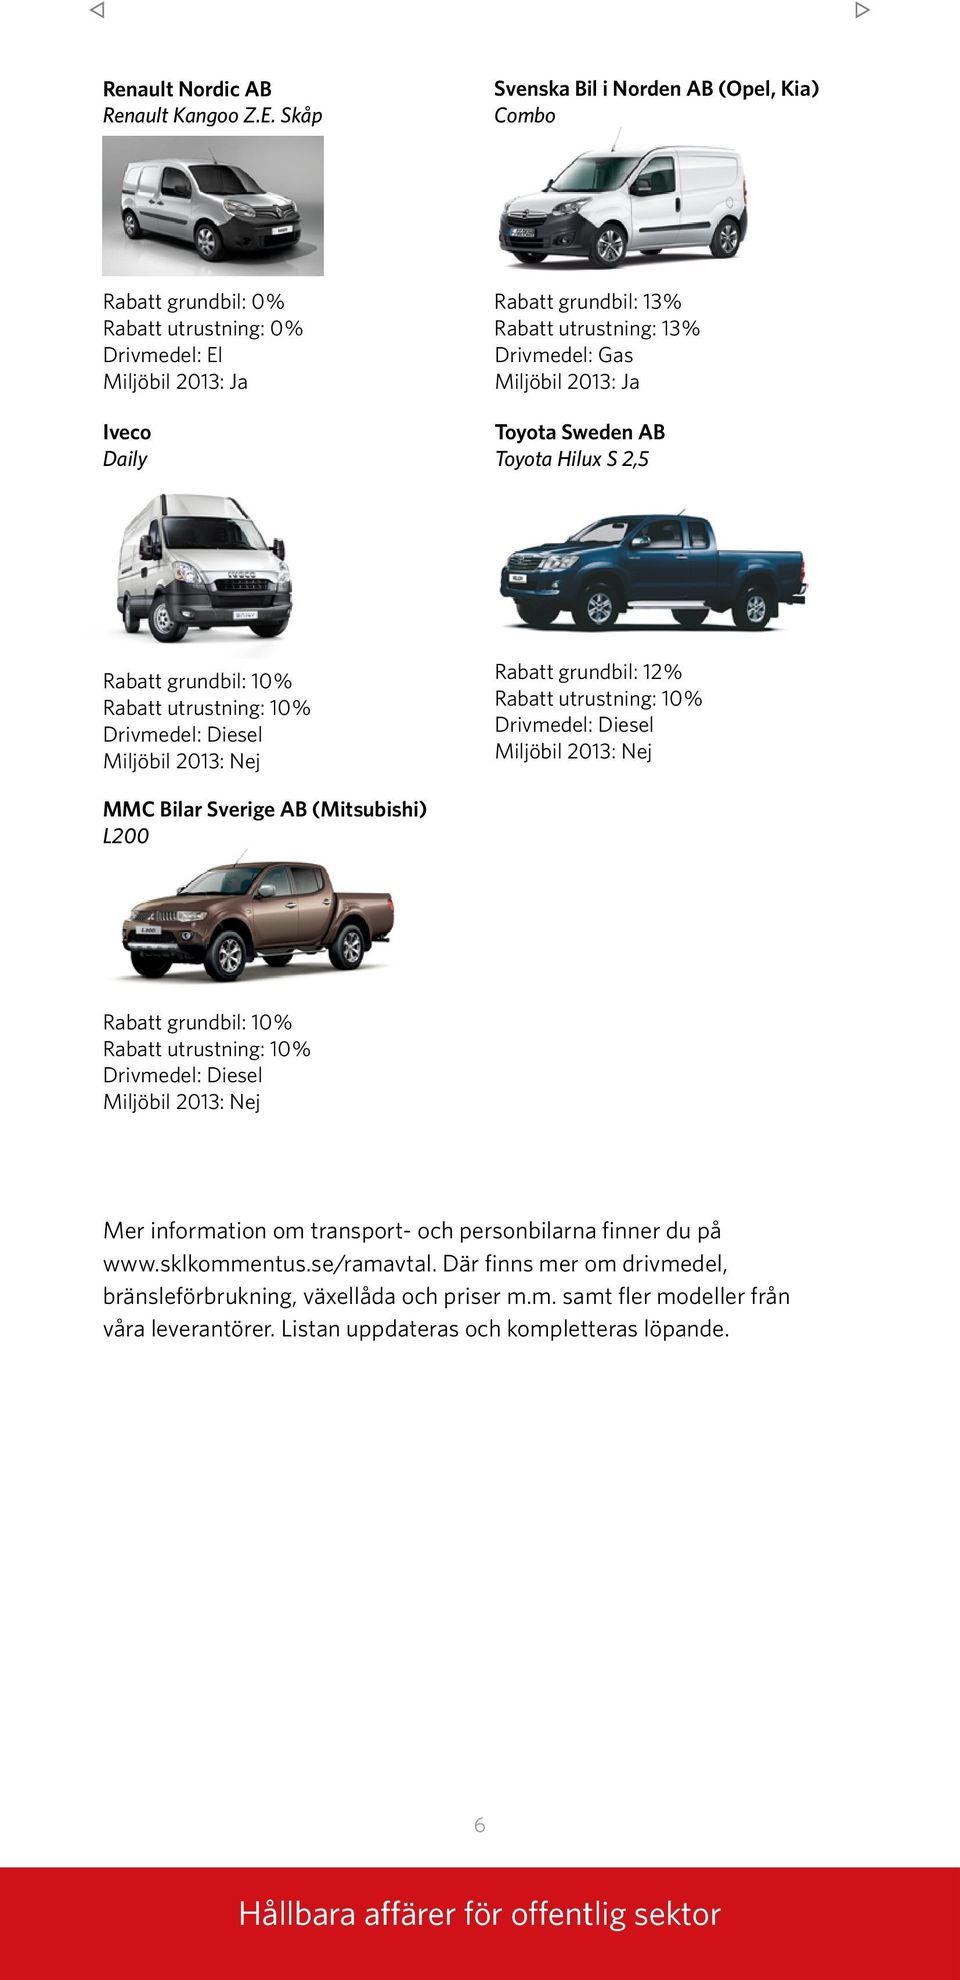 Toyota Sweden AB Toyota Hilux S 2,5 Rabatt grundbil: 10% Rabatt grundbil: 12% MMC Bilar Sverige AB (Mitsubishi) L200 Rabatt grundbil: 10% Mer information